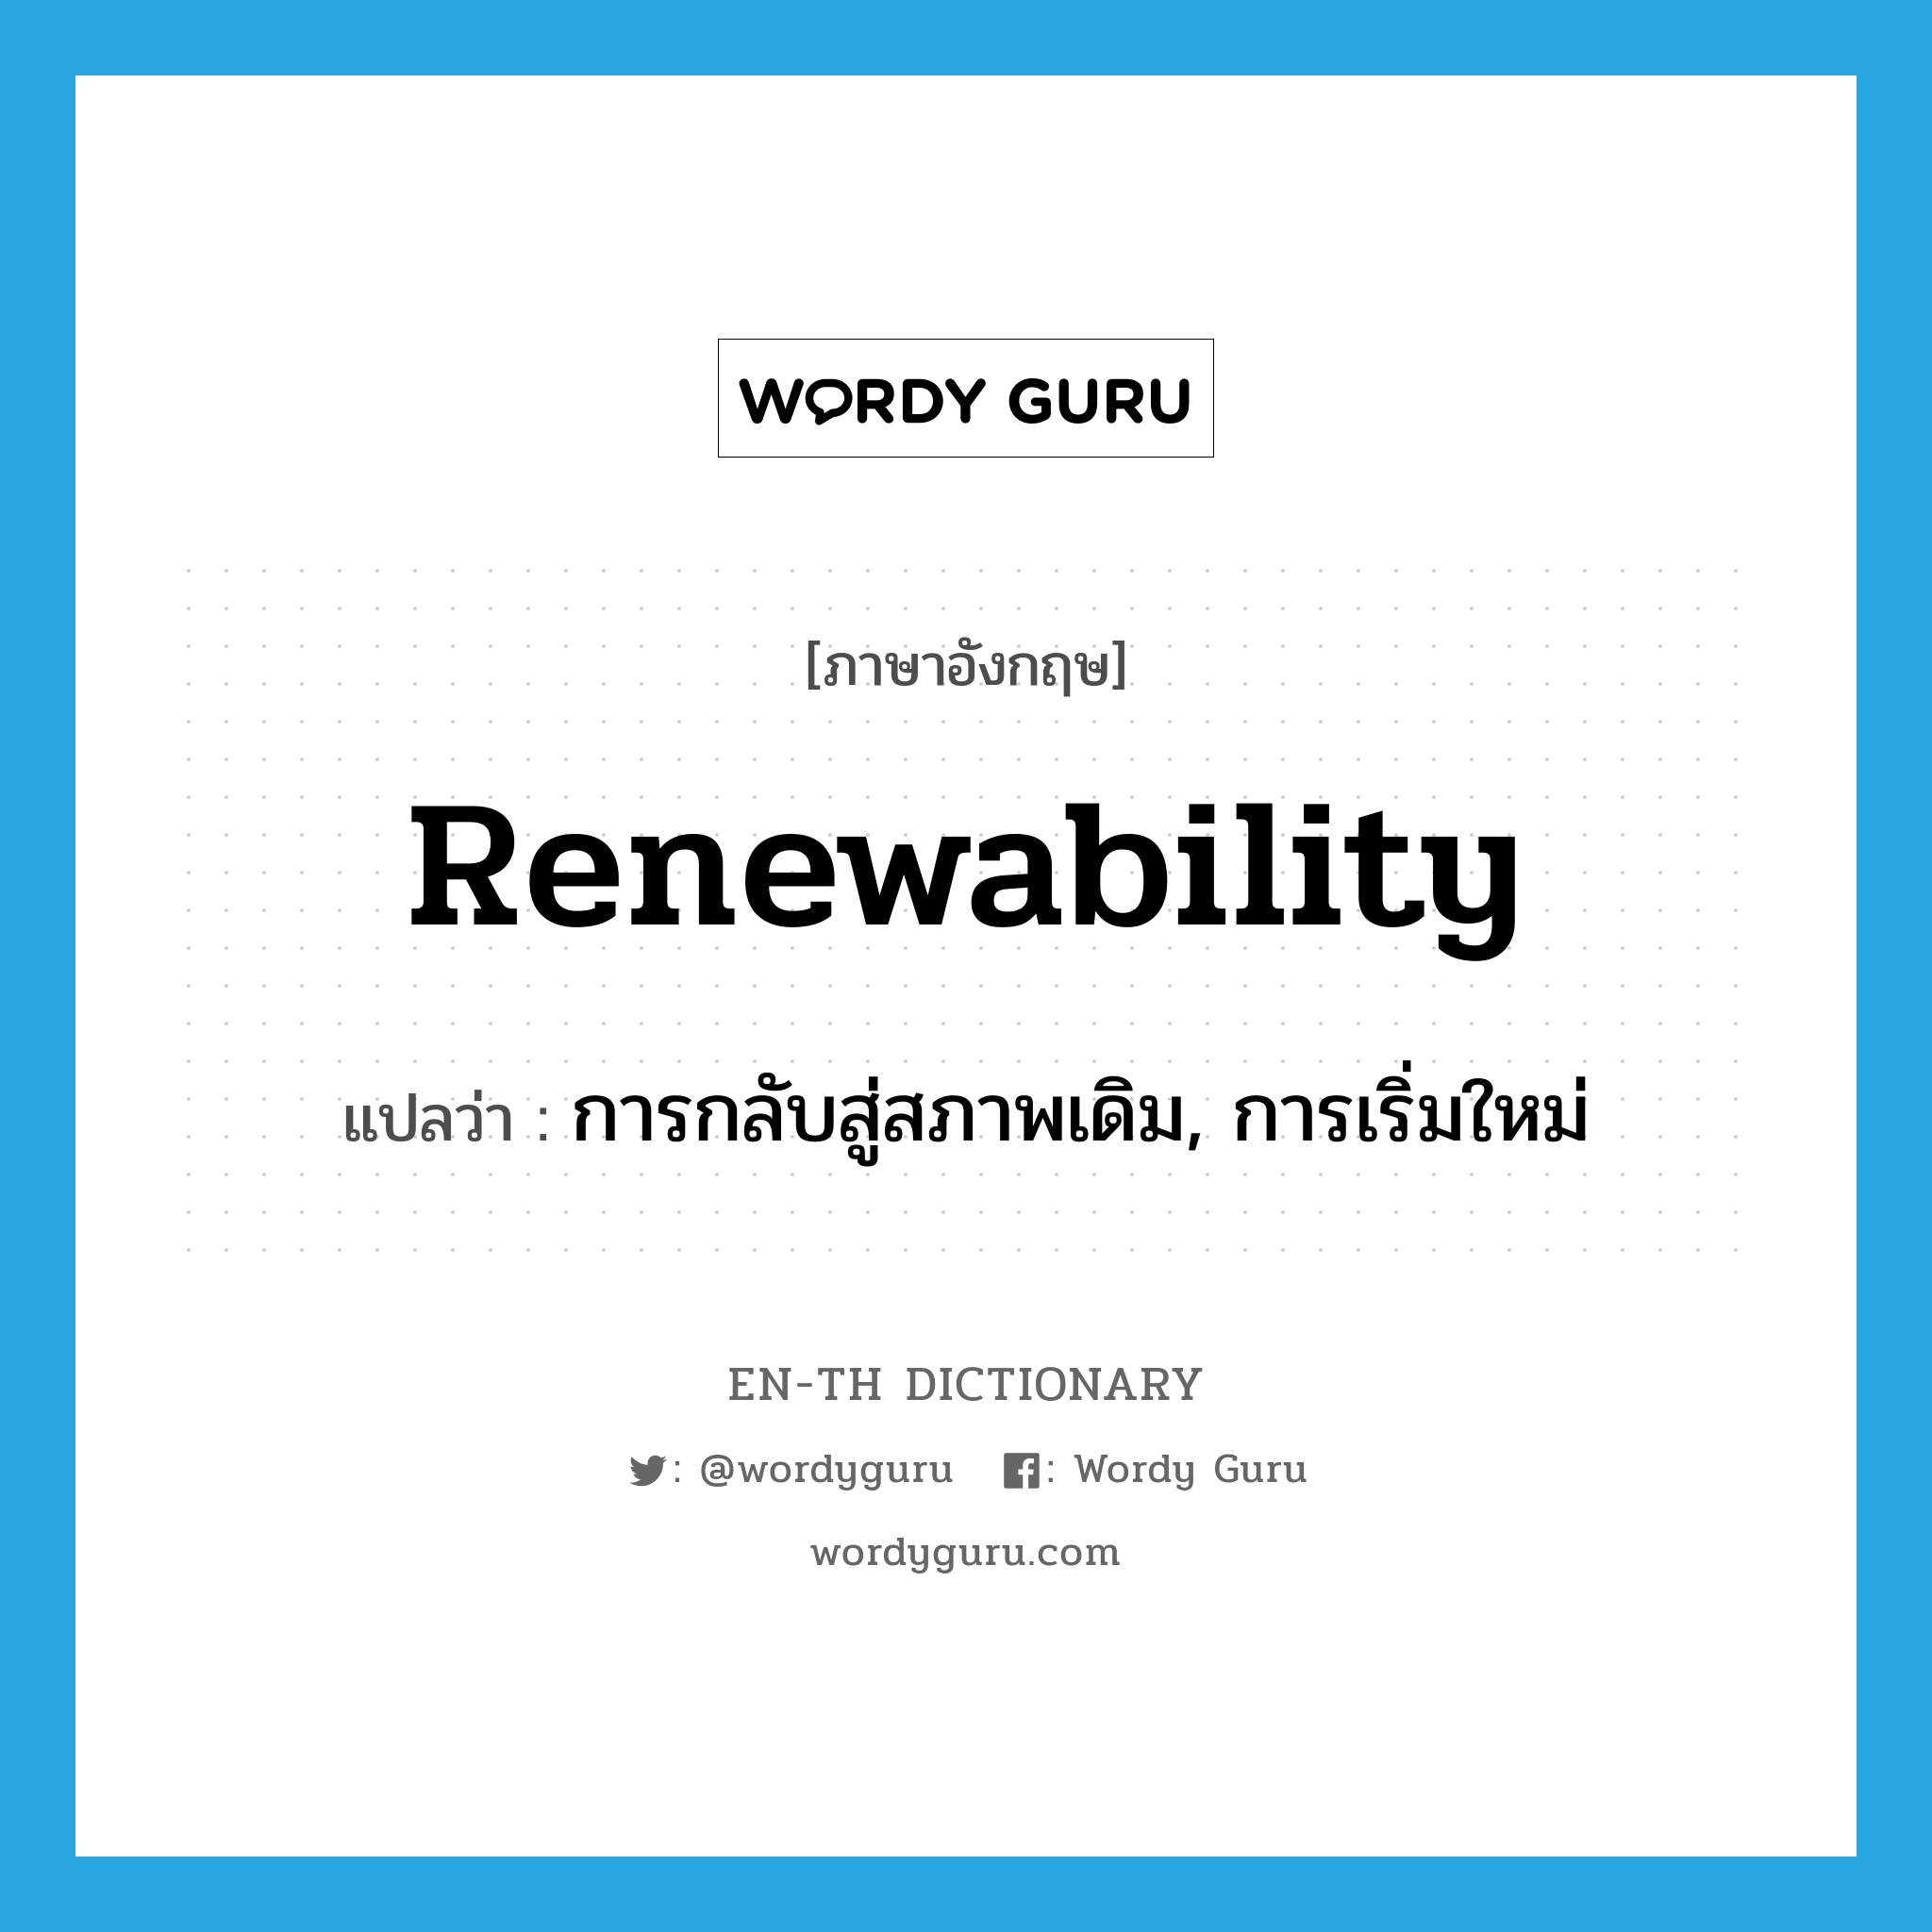 การกลับสู่สภาพเดิม, การเริ่มใหม่ ภาษาอังกฤษ?, คำศัพท์ภาษาอังกฤษ การกลับสู่สภาพเดิม, การเริ่มใหม่ แปลว่า renewability ประเภท N หมวด N